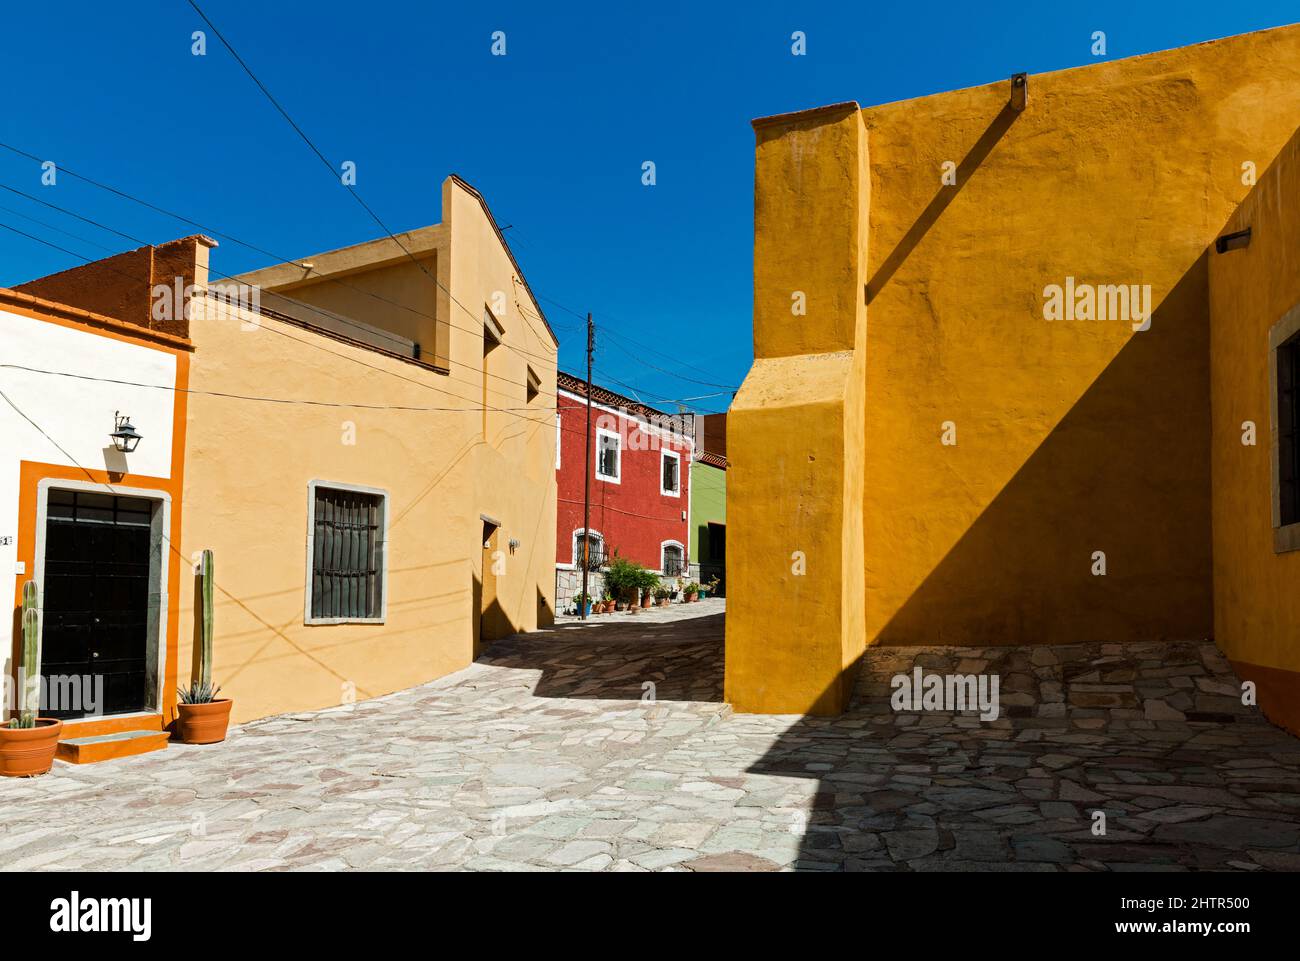 Mexico, Guanajuato,Guanajuato, Spanish Colonial architecture building in yellow  colours Stock Photo